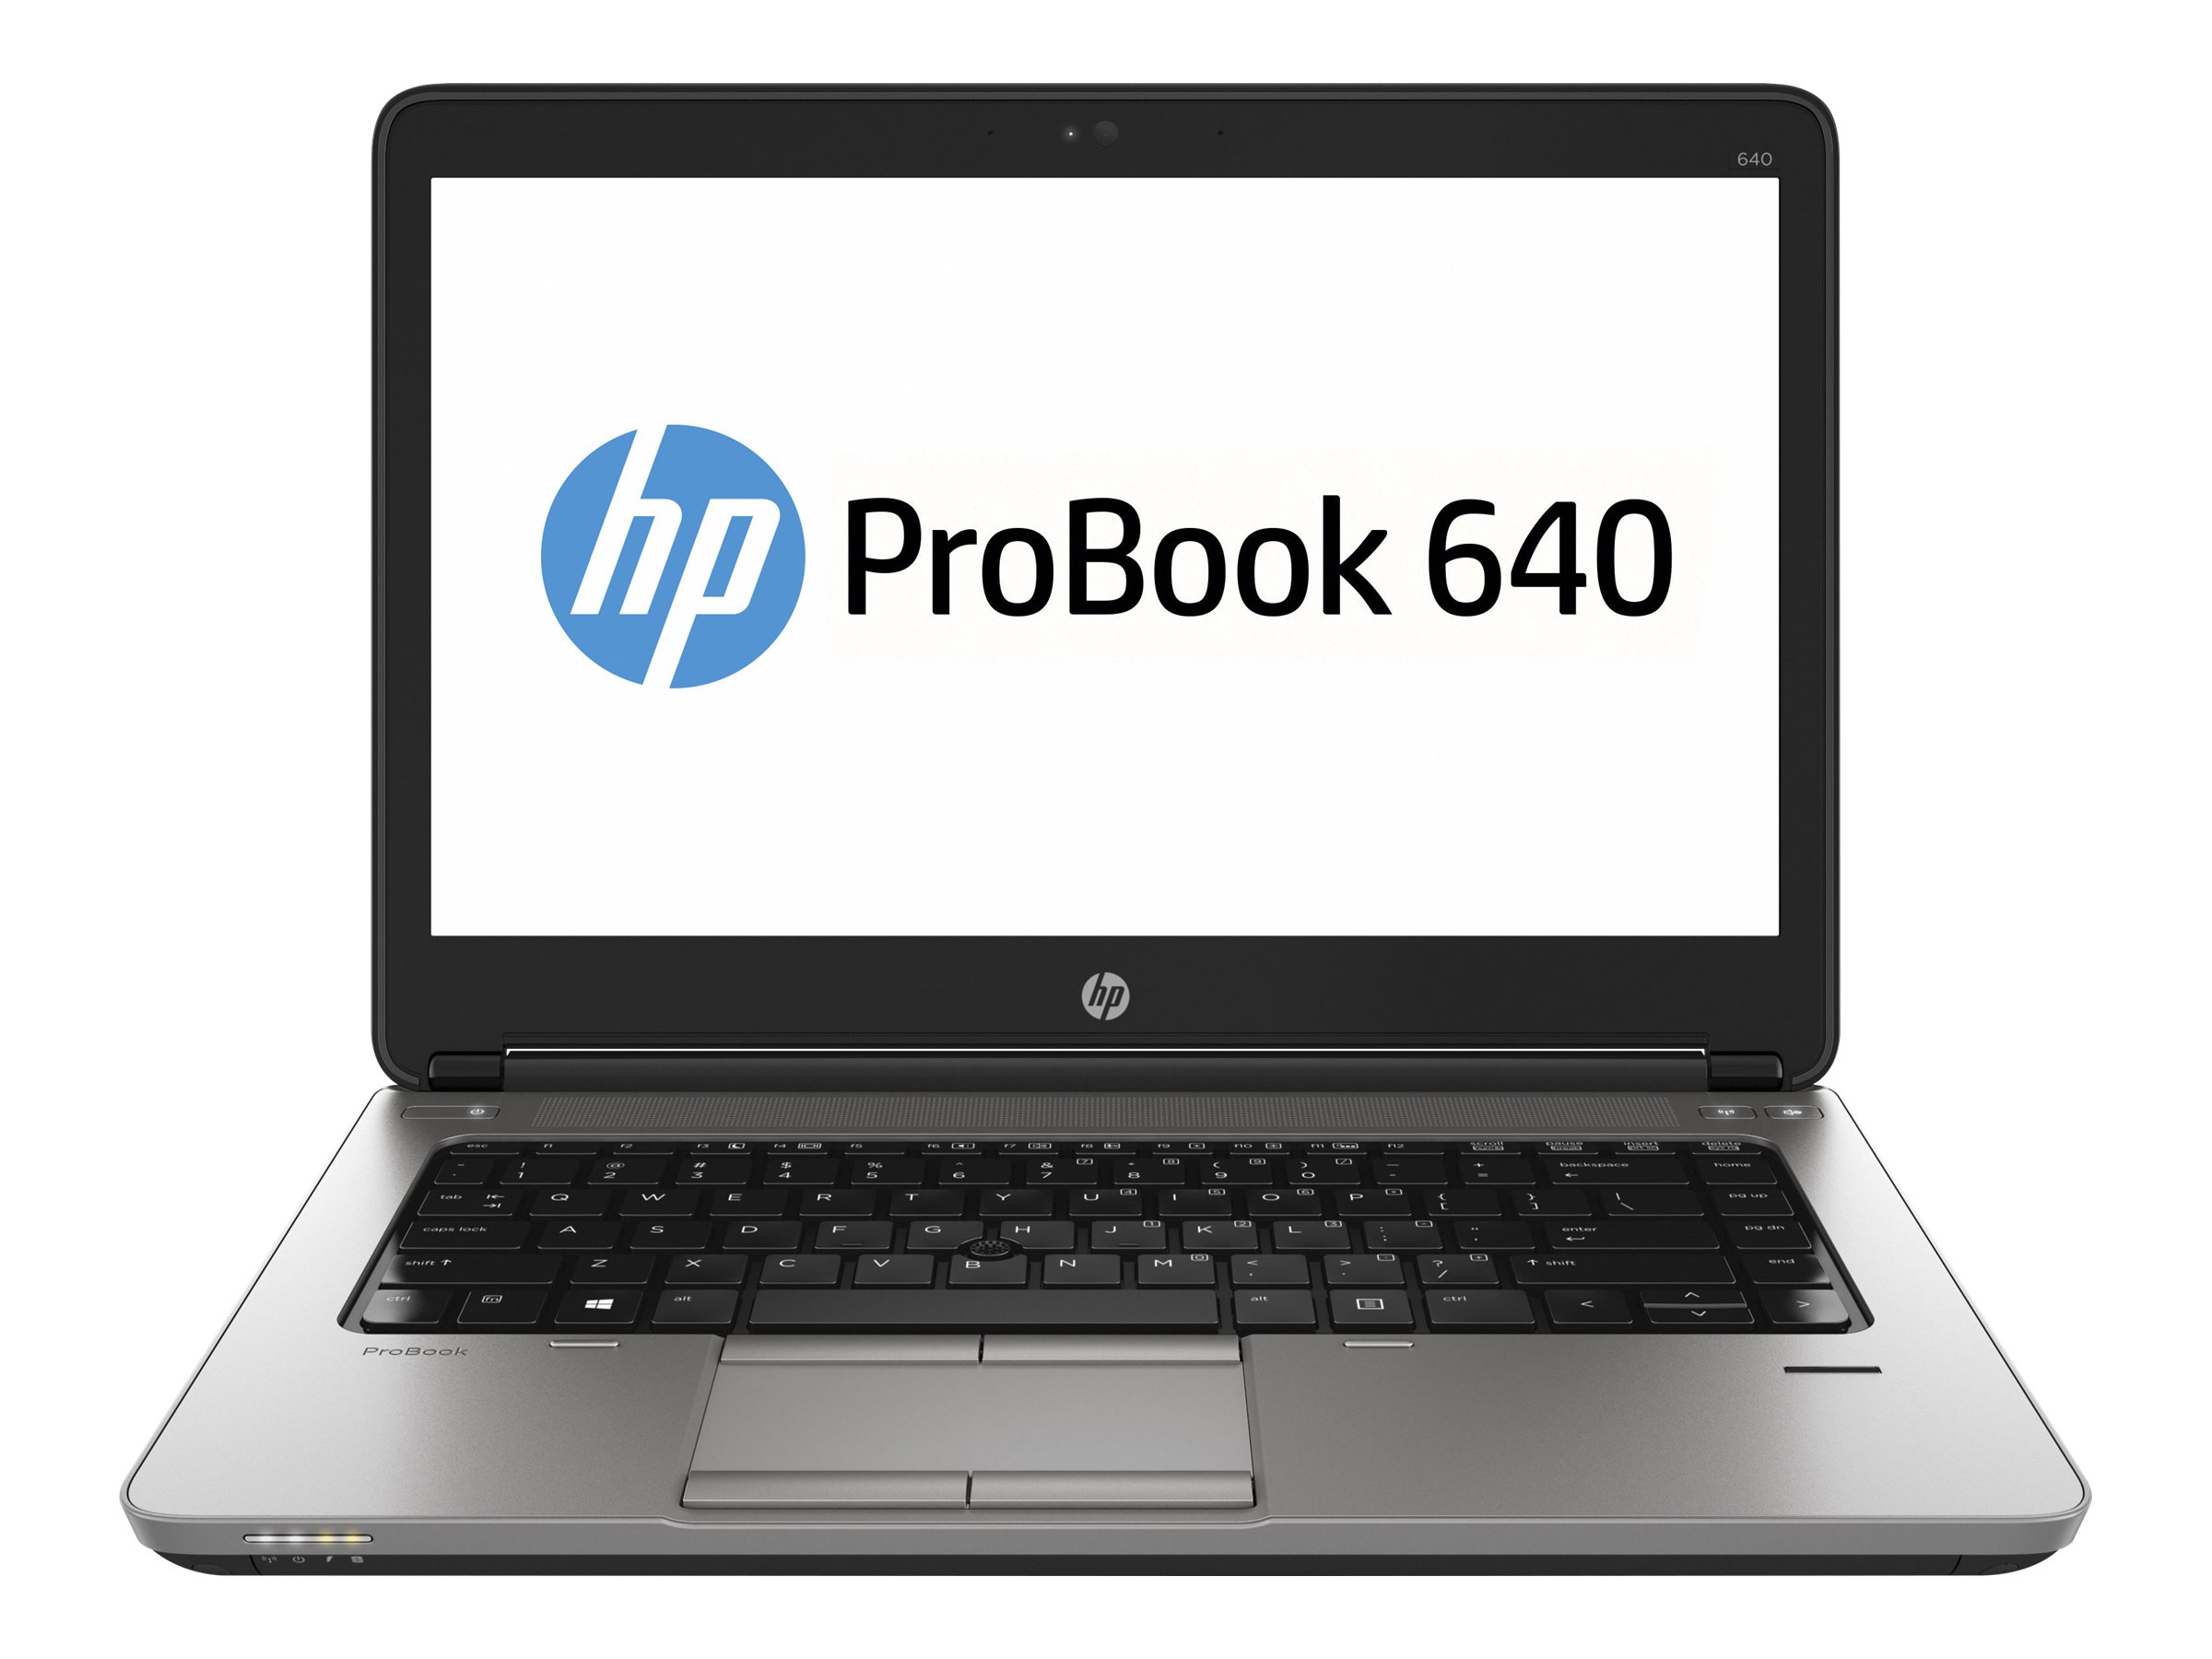 Hp ProBook 640 -Intel Core i3, 4GB RAM, 500GB HDD, 14″ Display2